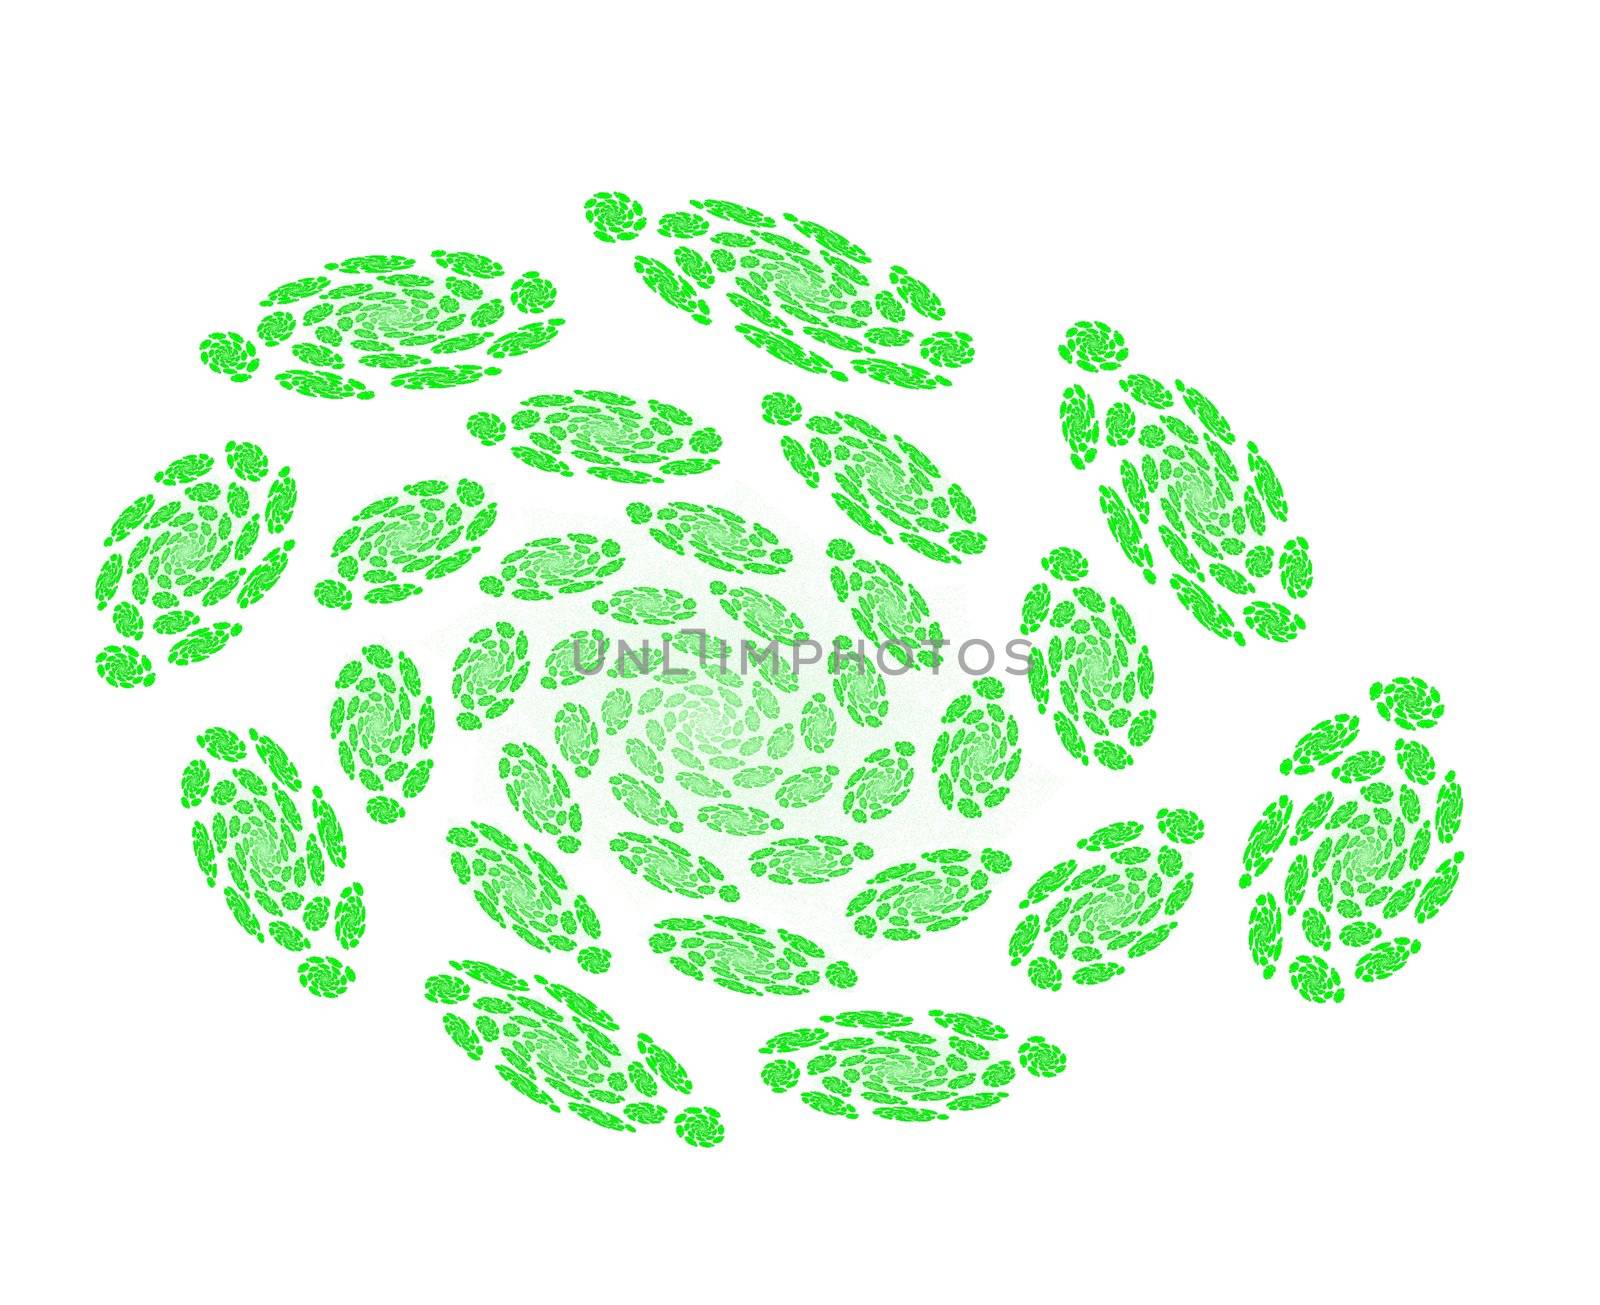   fractal spiral in green tones